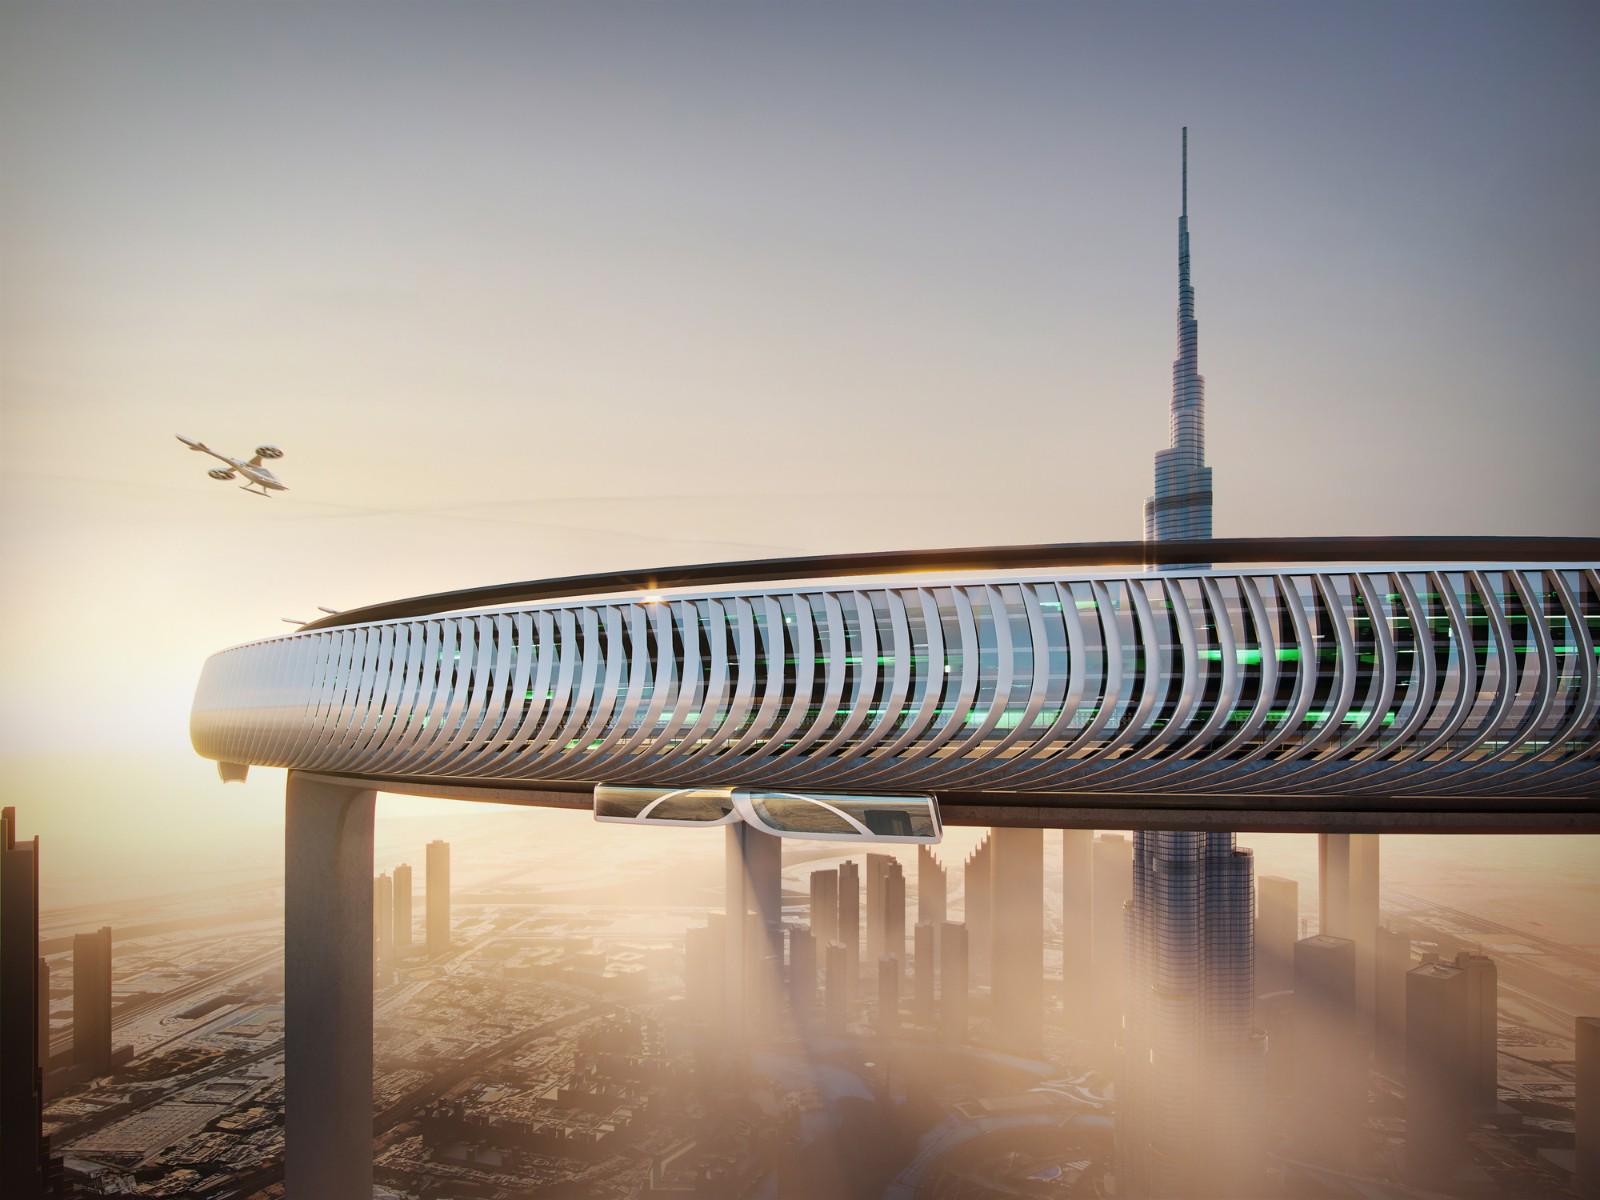 2022迪拜又新出一黑科技未来式建筑,电影中科幻建筑将被实现